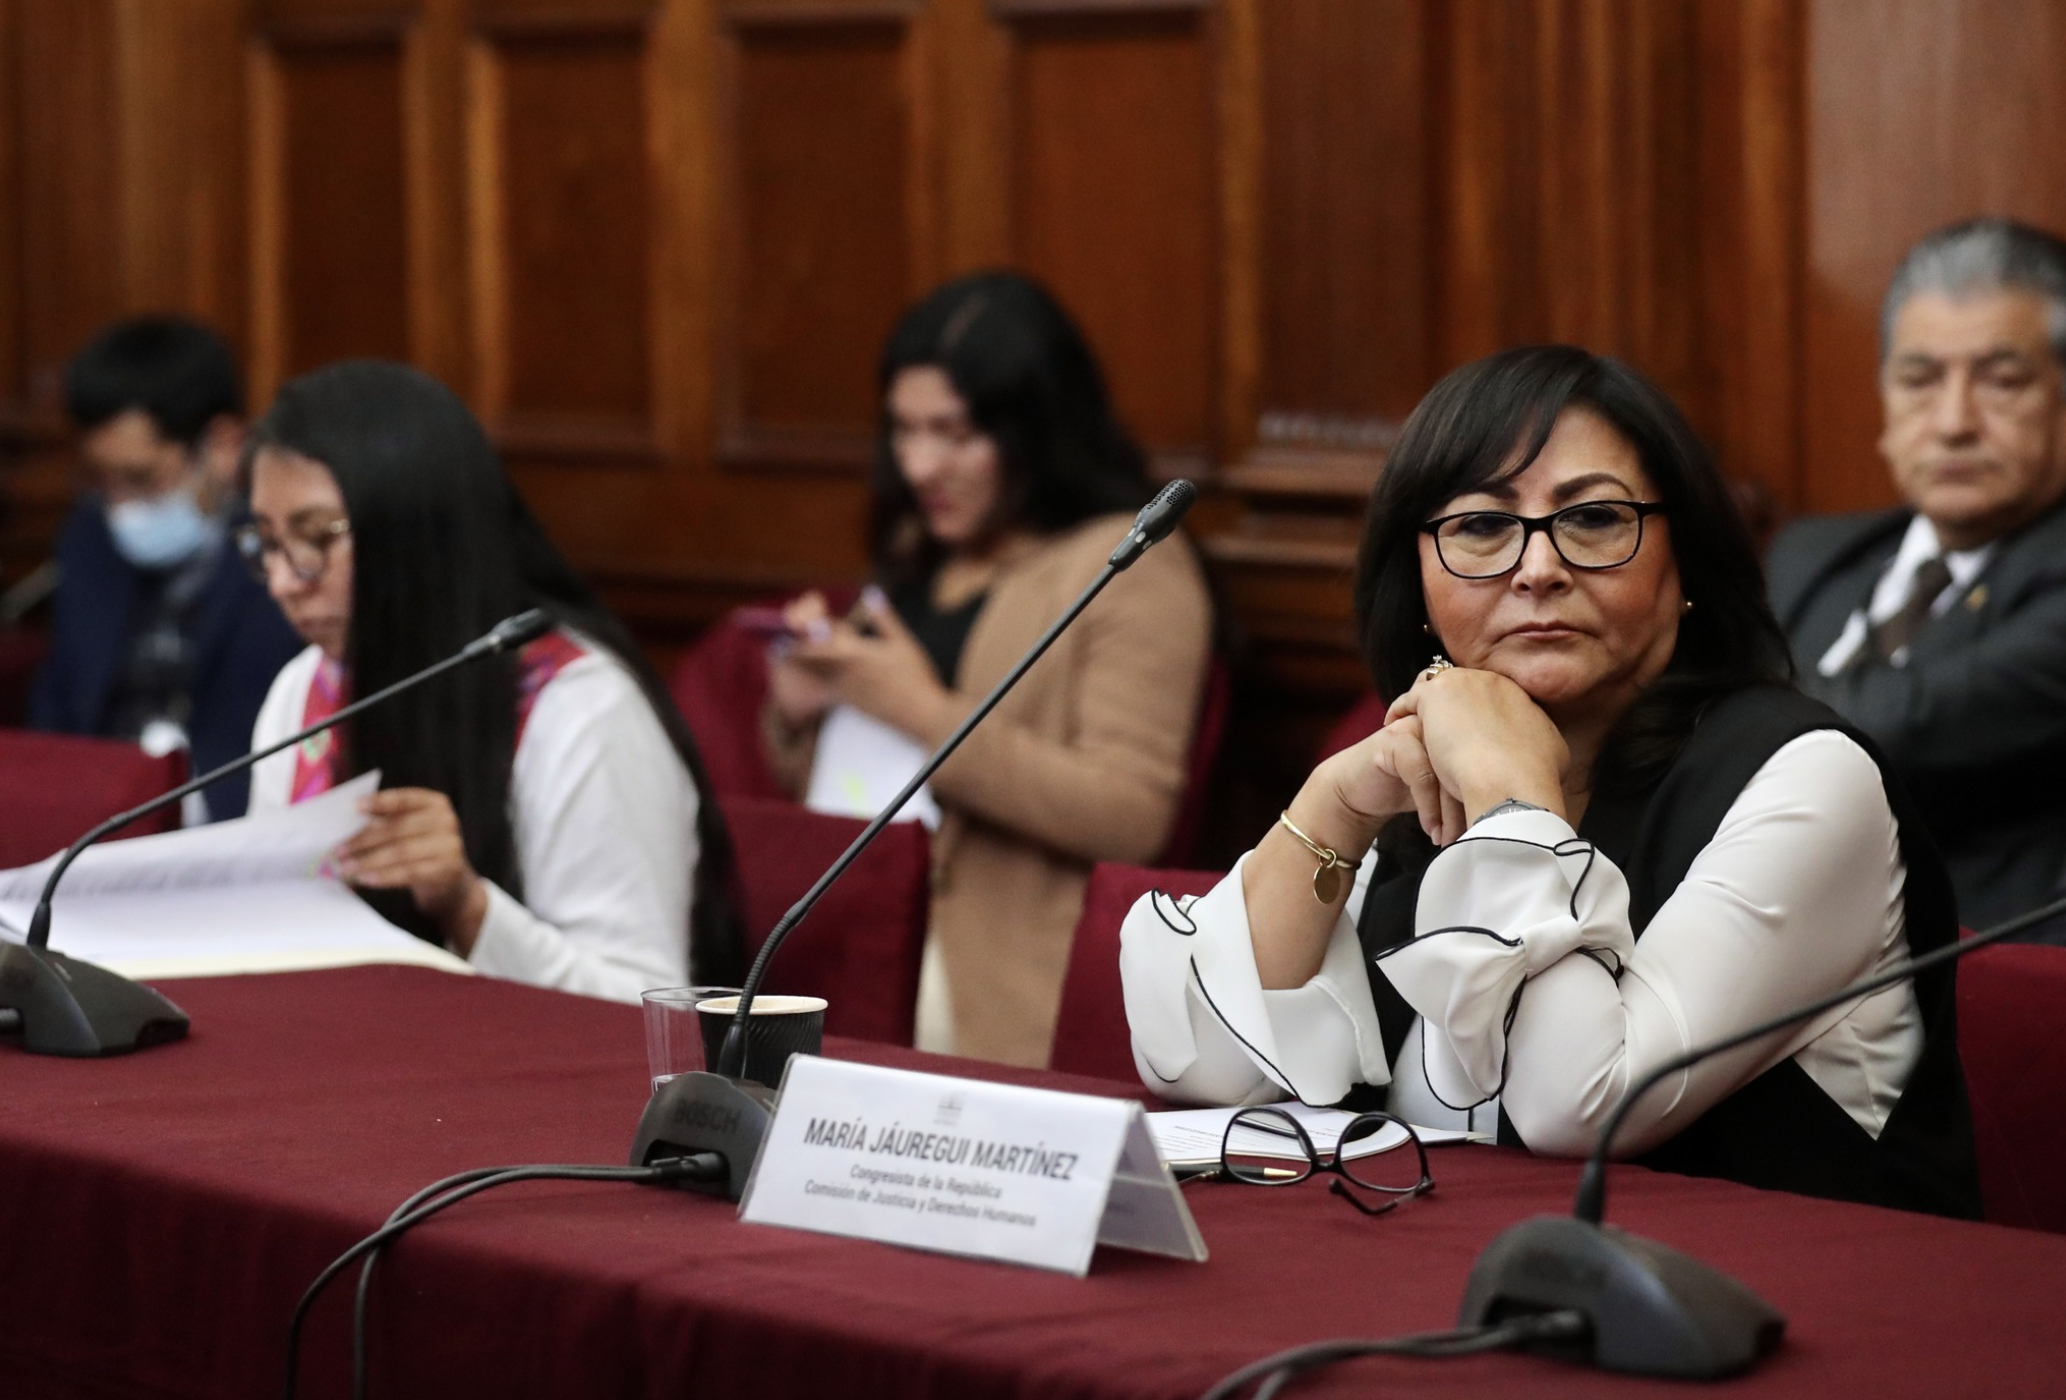 Congresistas Milagros Aguayo y Ruth Luque debatieron acerca del proyecto de ley que busca dotar de derechos absolutos al concebido.